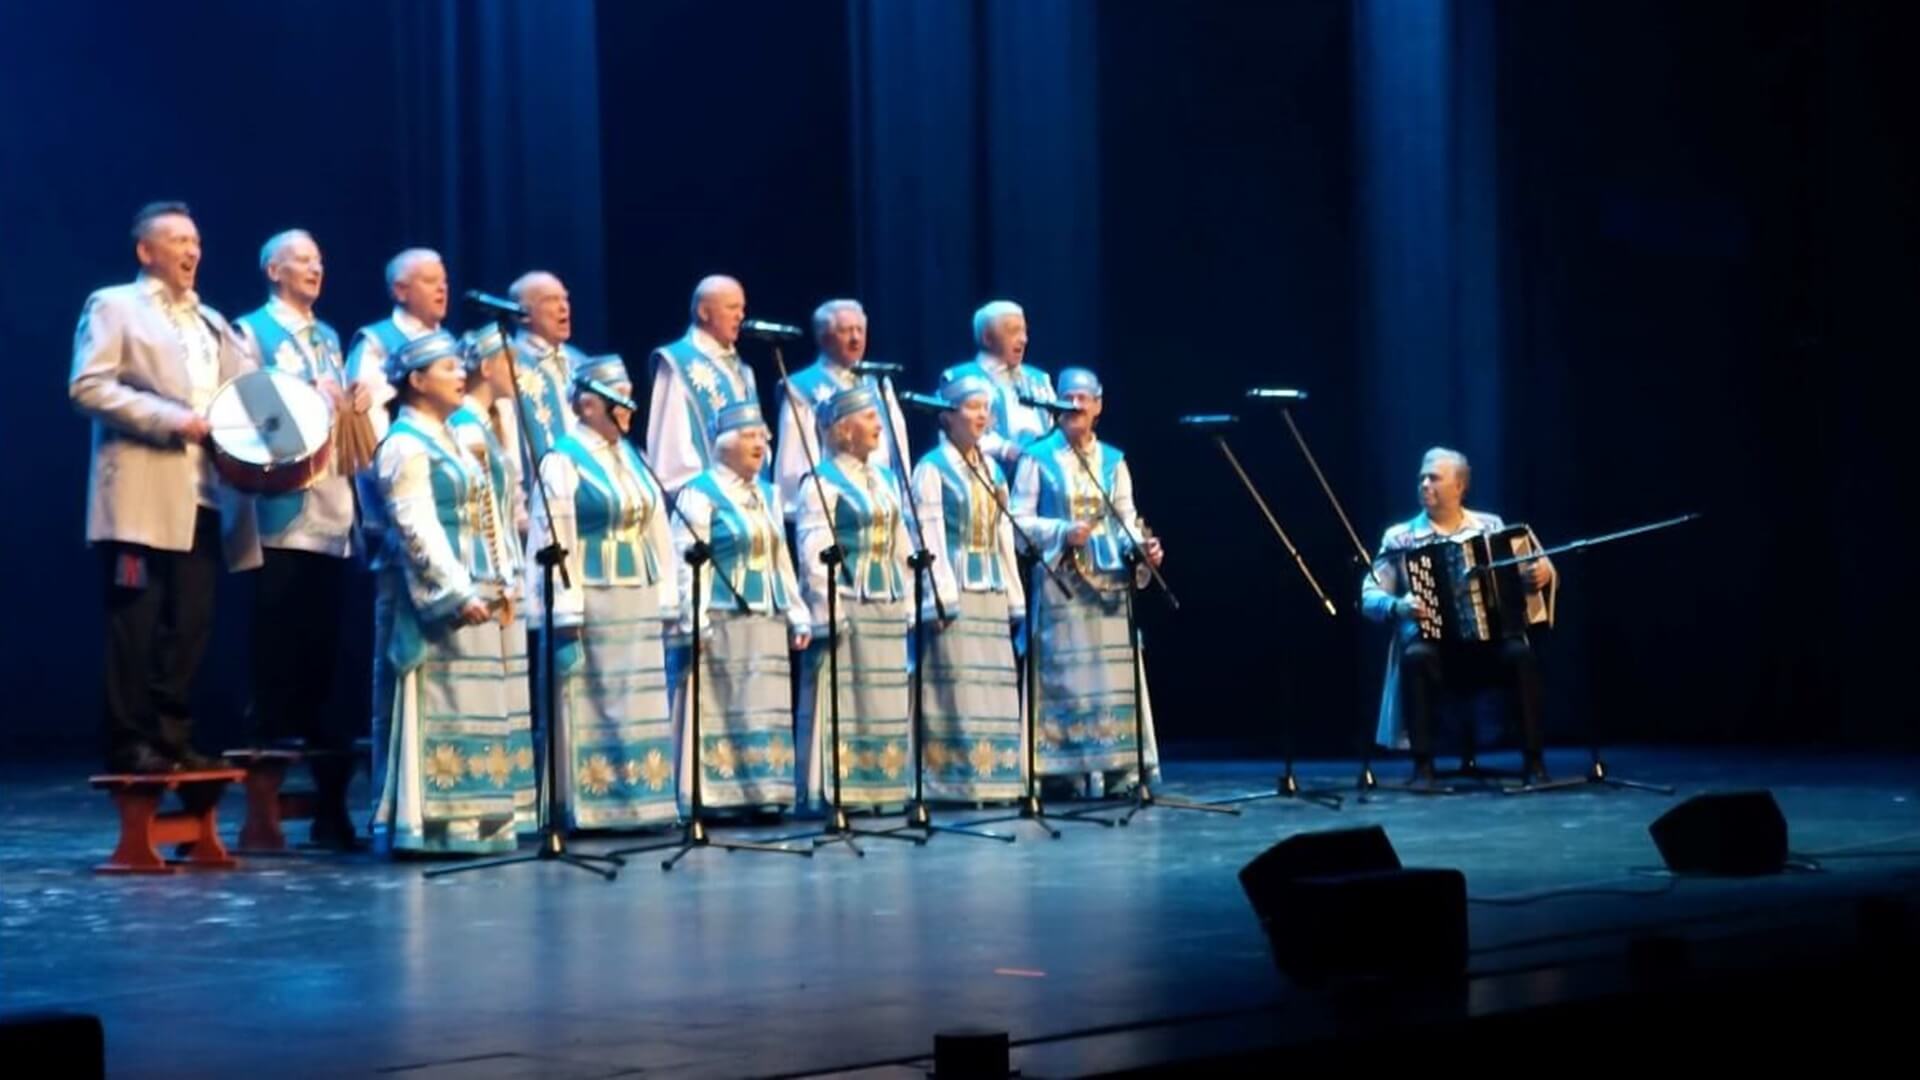 Doroczna gala festiwalu piosenki białoruskiej w Białymstoku, fot. Anna Petrovska